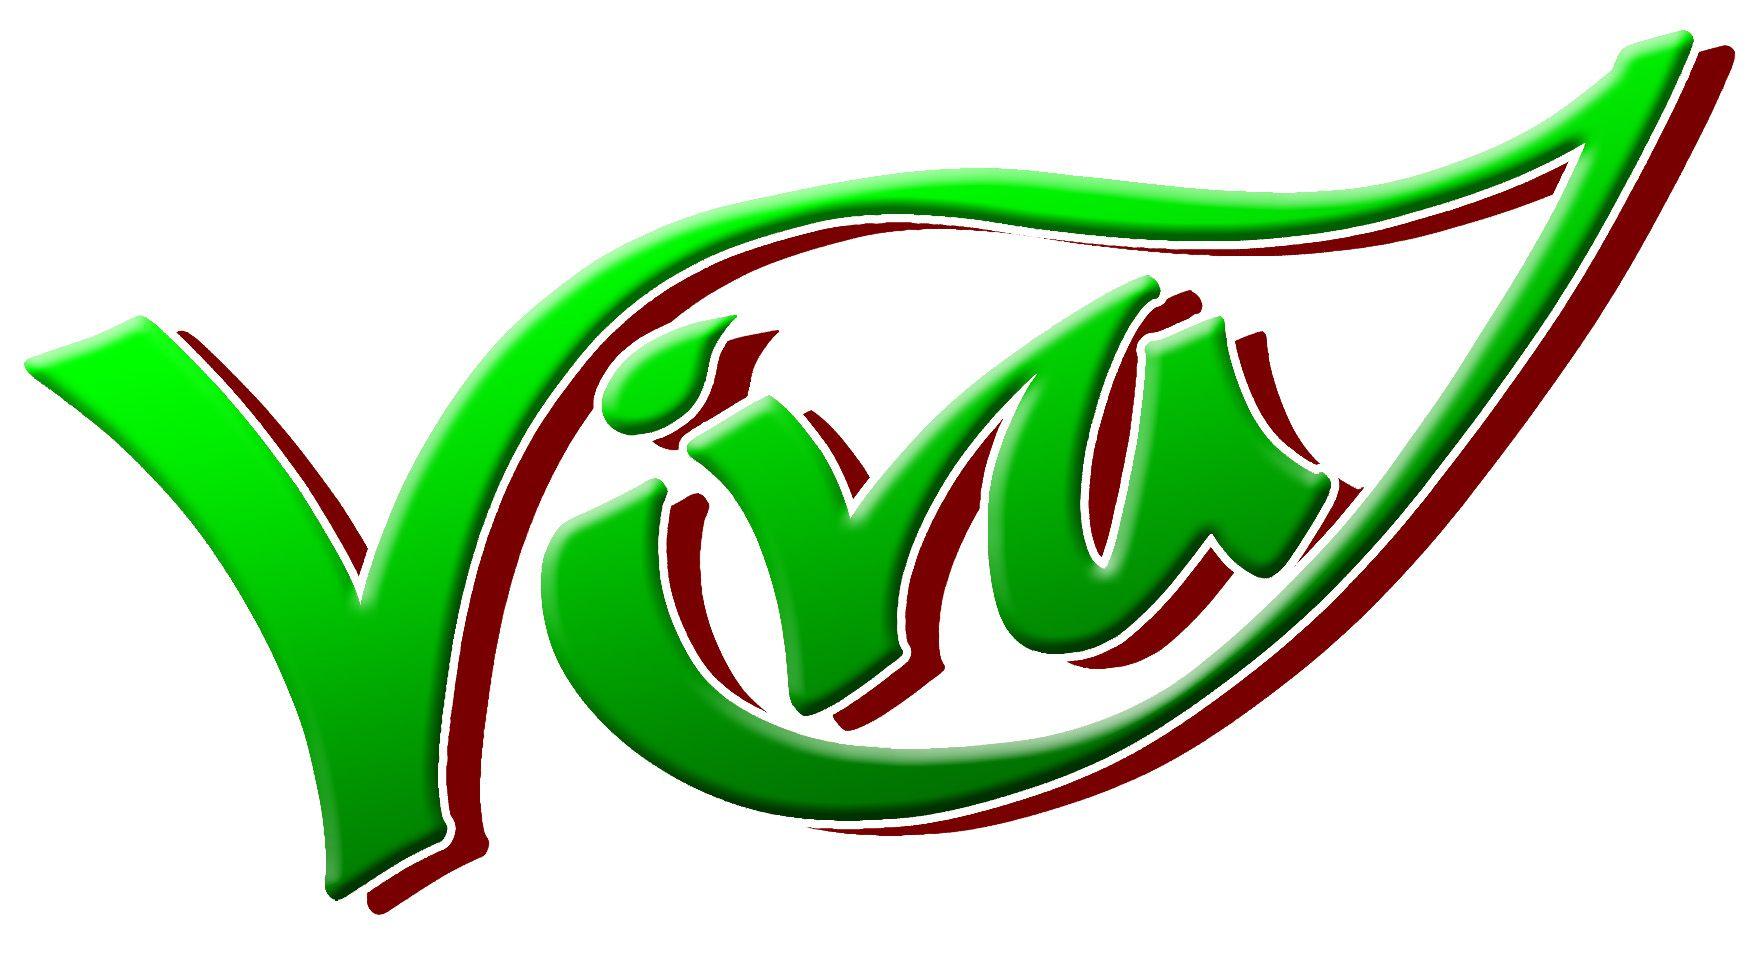 Viva Logo - Viva 4 Life - Vegan & Raw Food Restaurant In Tacoma, WA